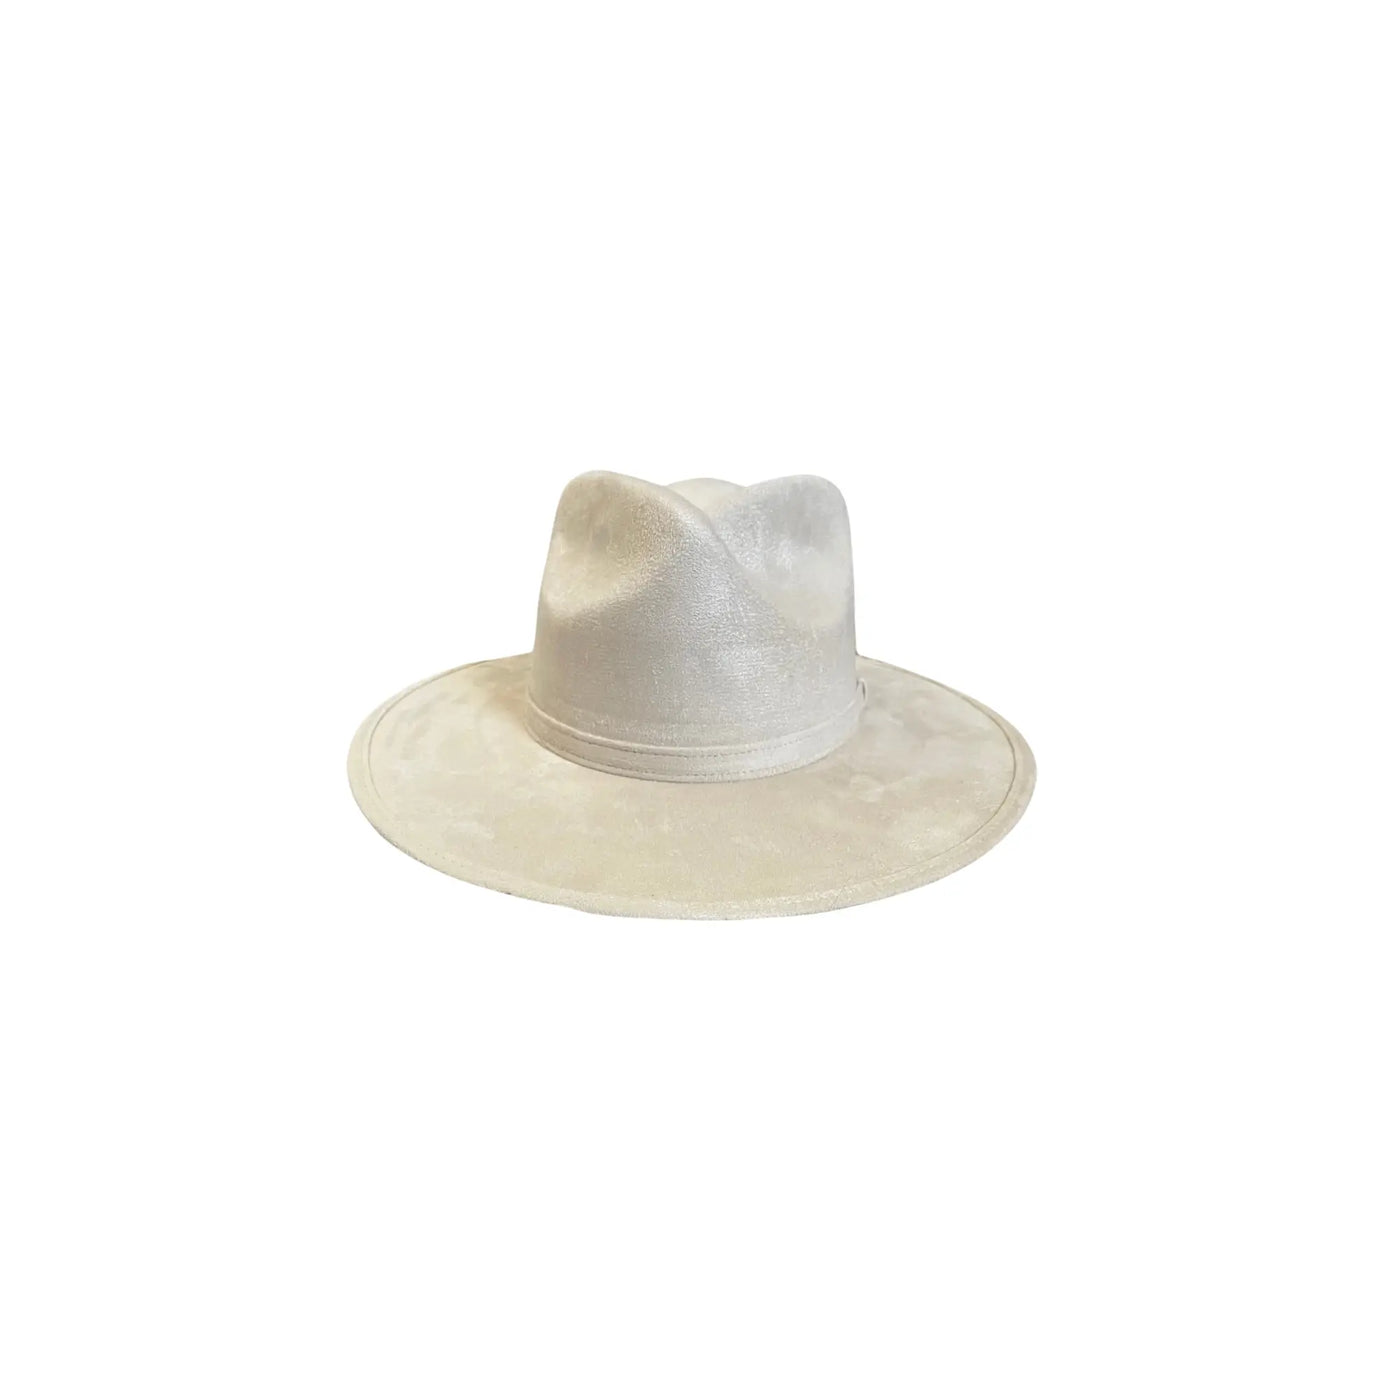 Cross top rancher hat